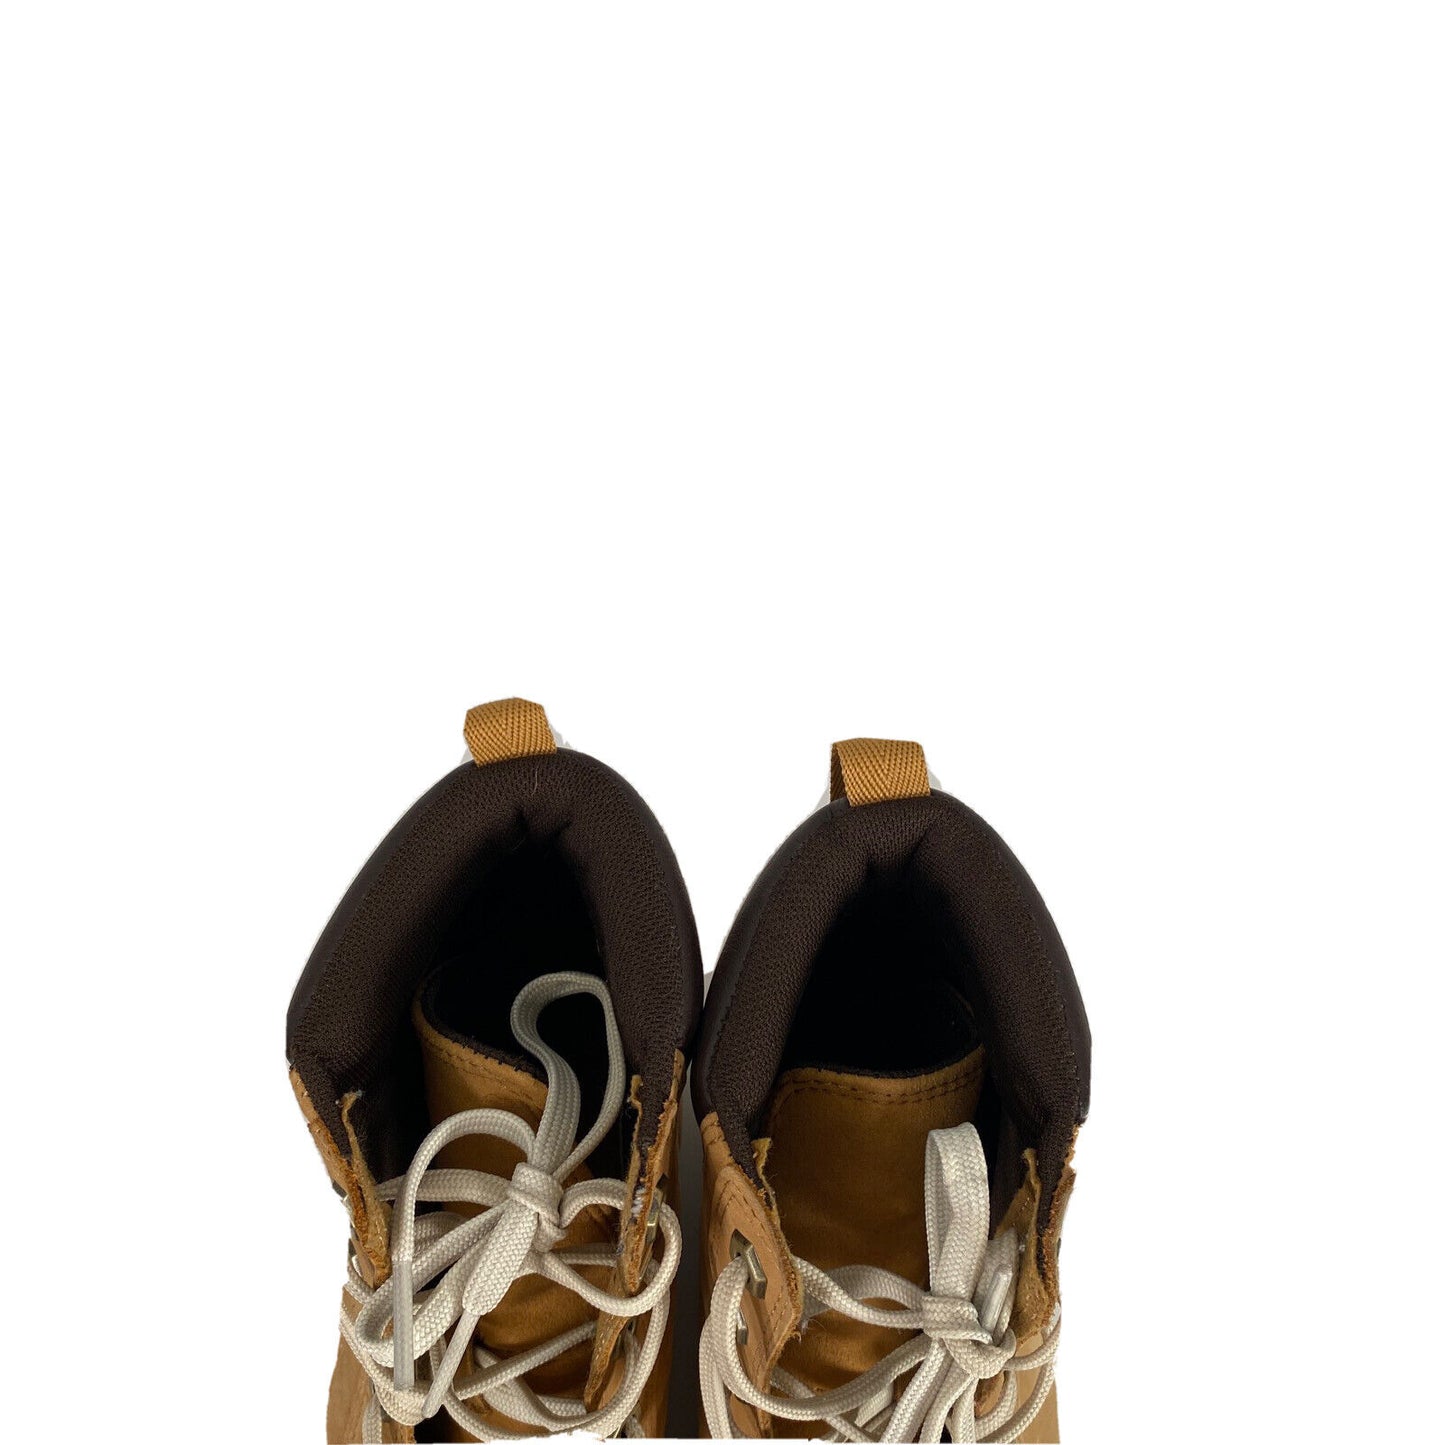 Timberland Women's Beige/Tan Skyla Bay 6 in Nubuck Sneaker Boots - 8